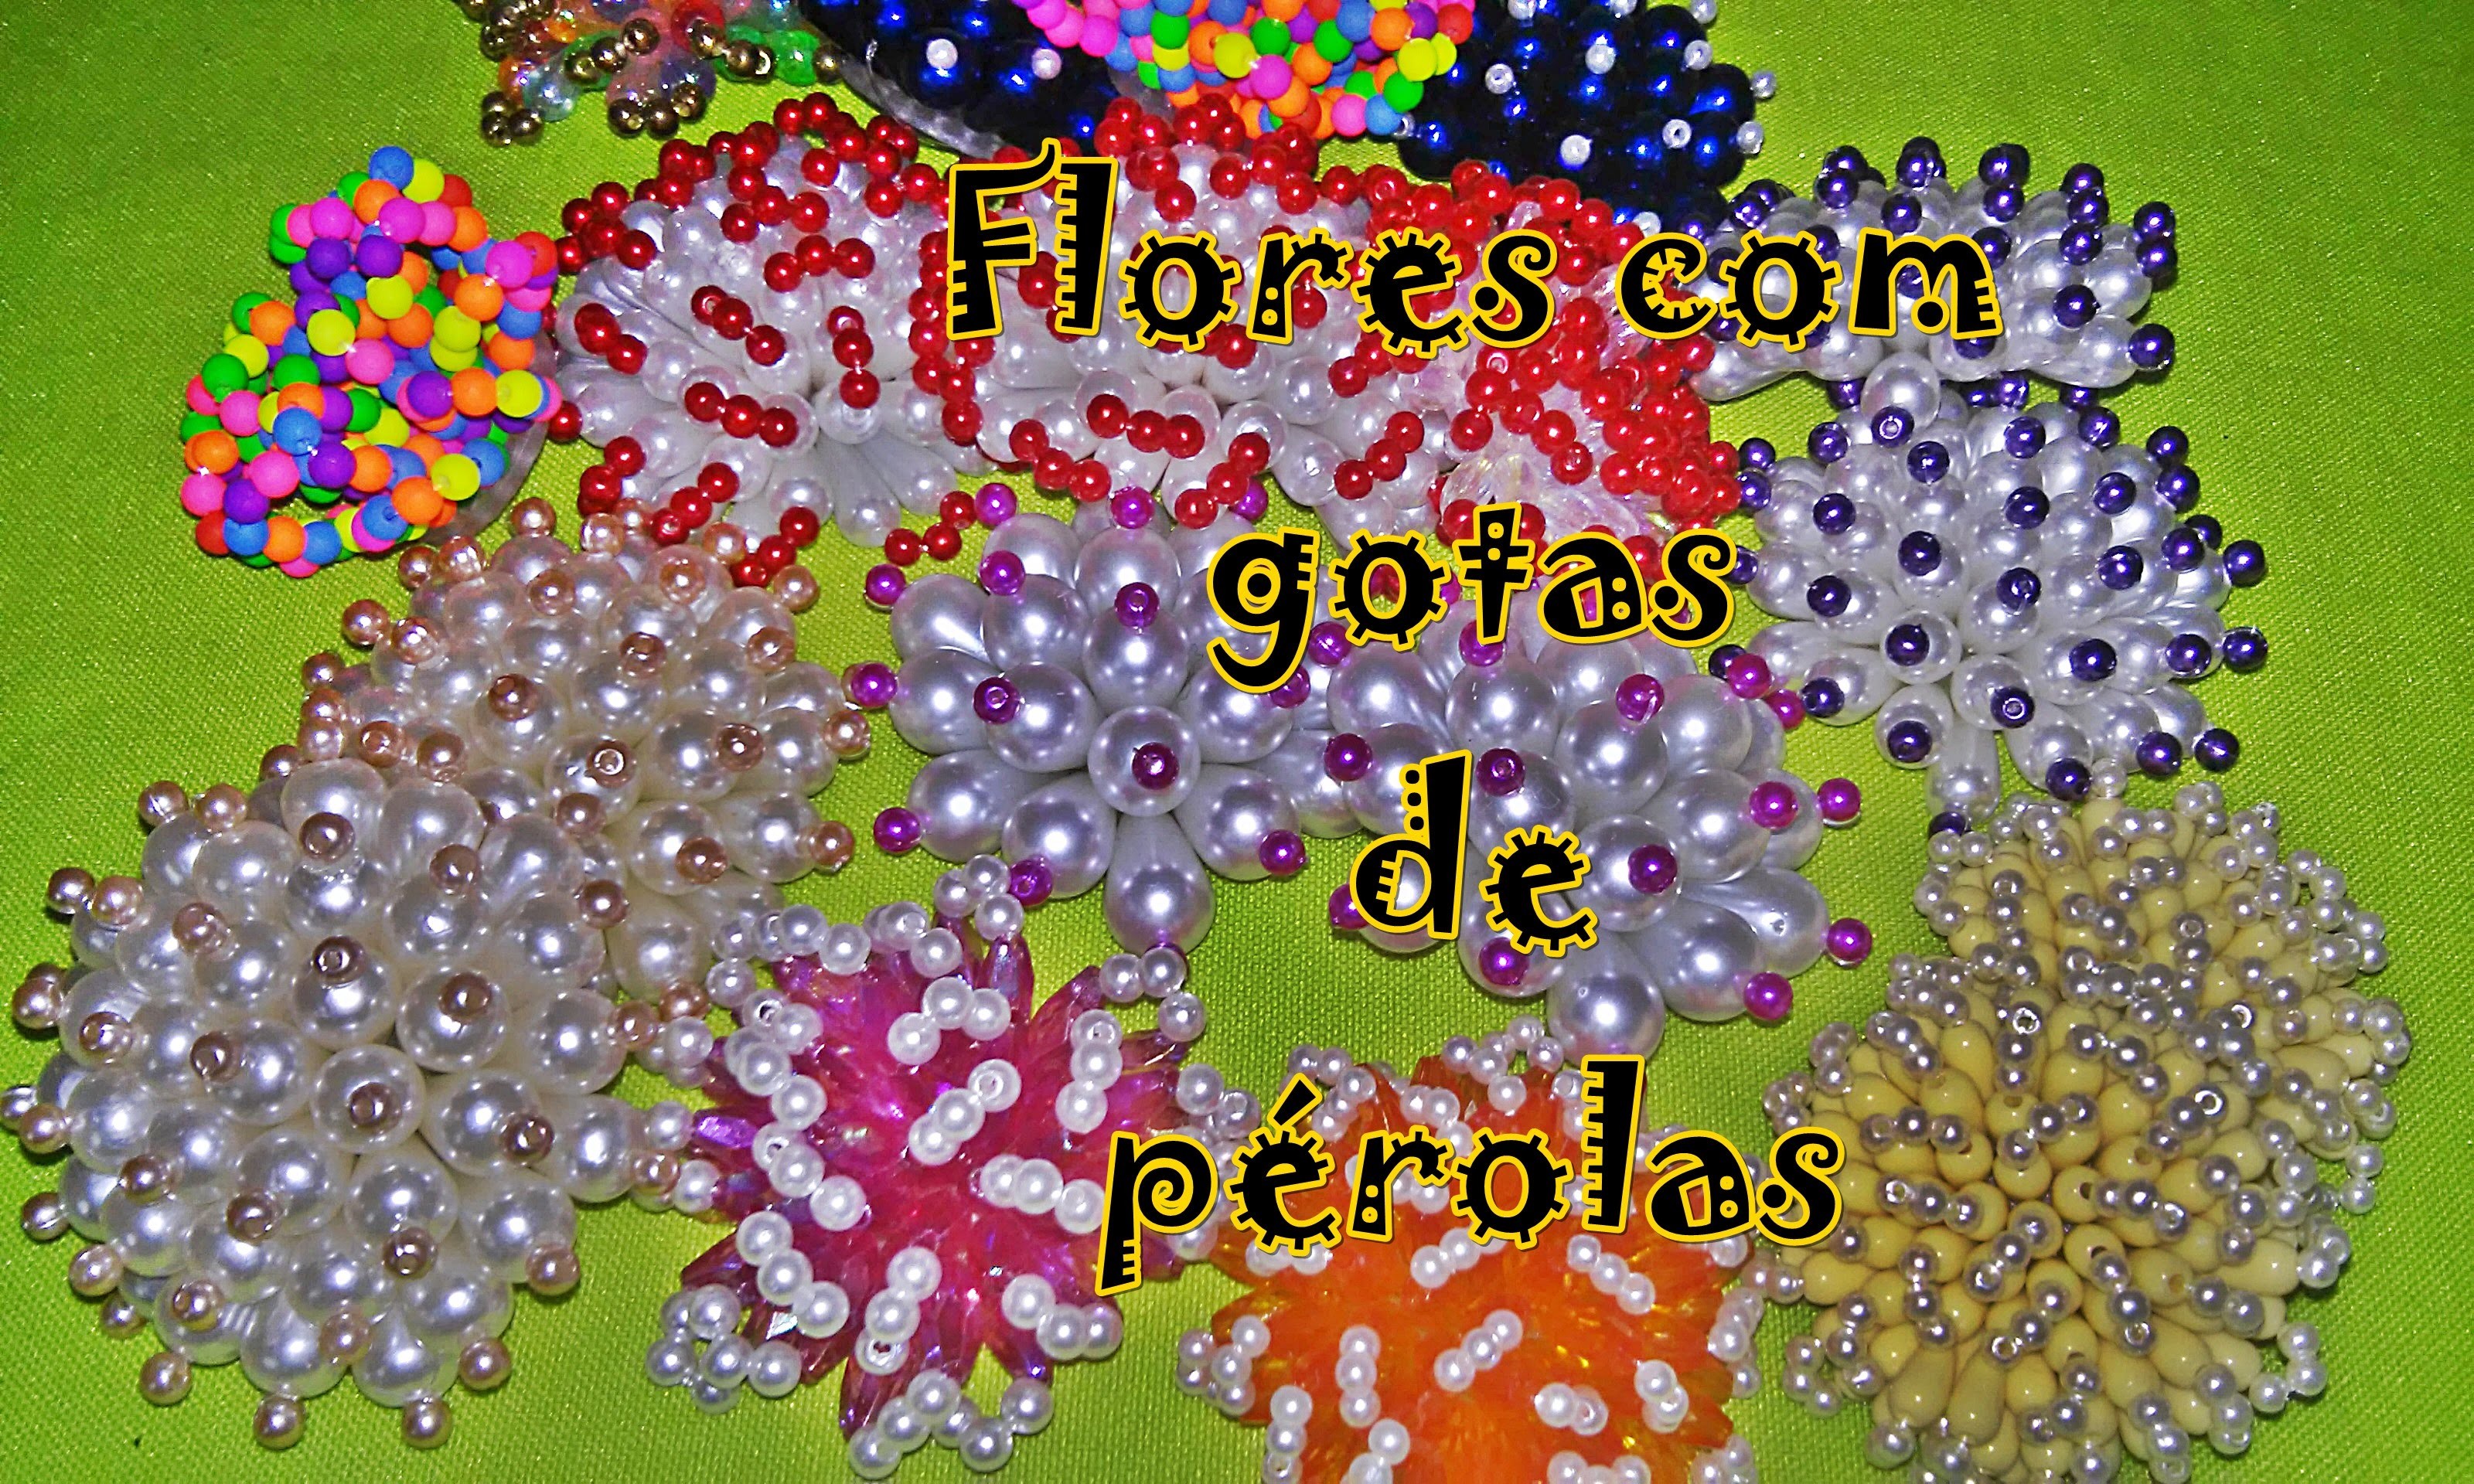 Flores de gotas de pérolas - DICAS